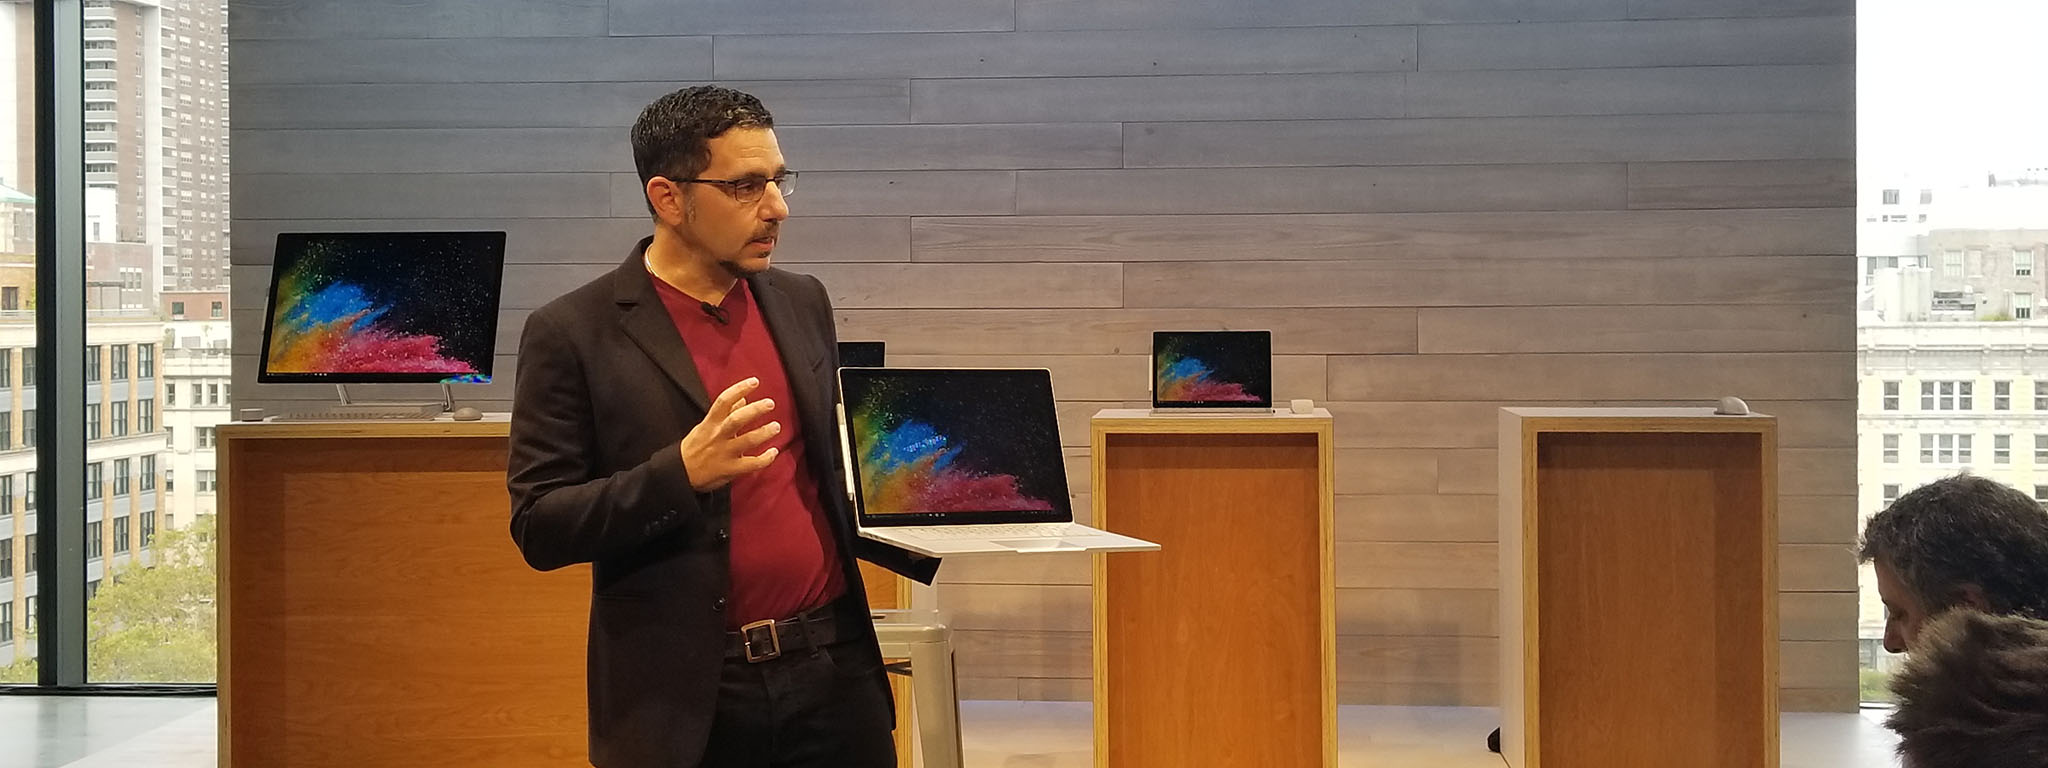 Panos Panay chia sẻ về Surface Book 2: bản lề thiết kế lại, hợp tác Intel để tối ưu hiệu năng